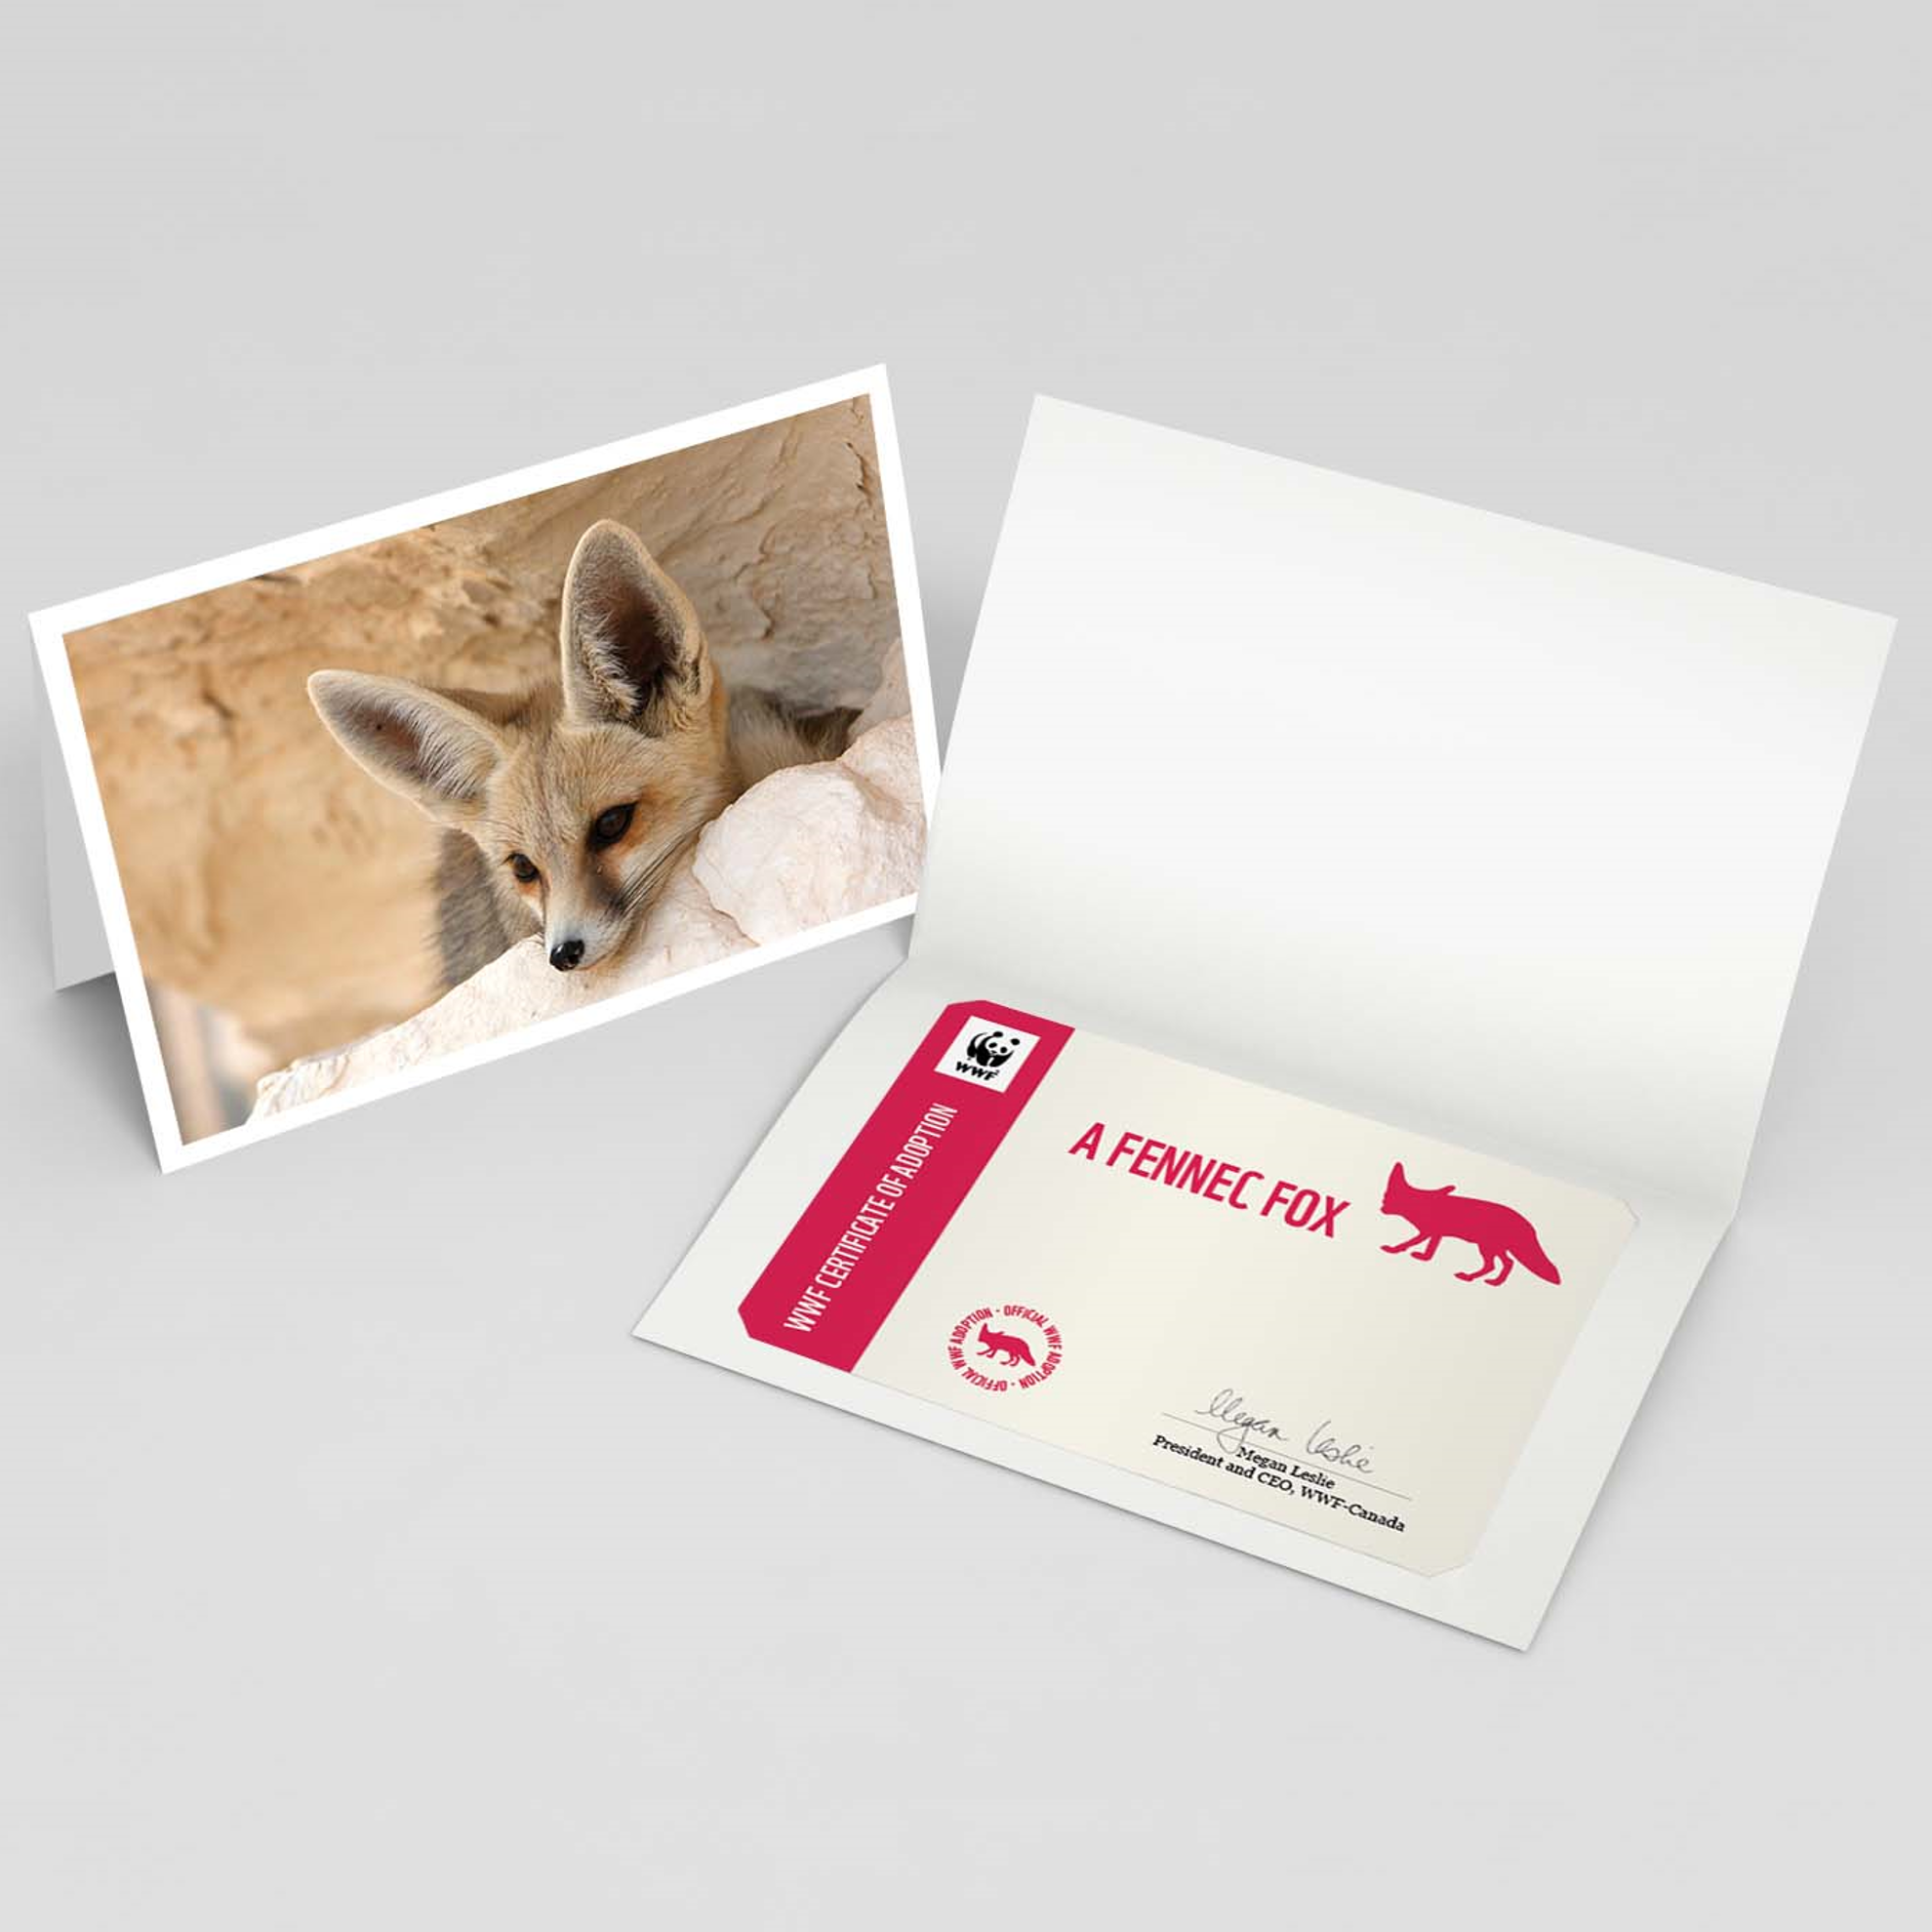 Fennec fox card - WWF-Canada